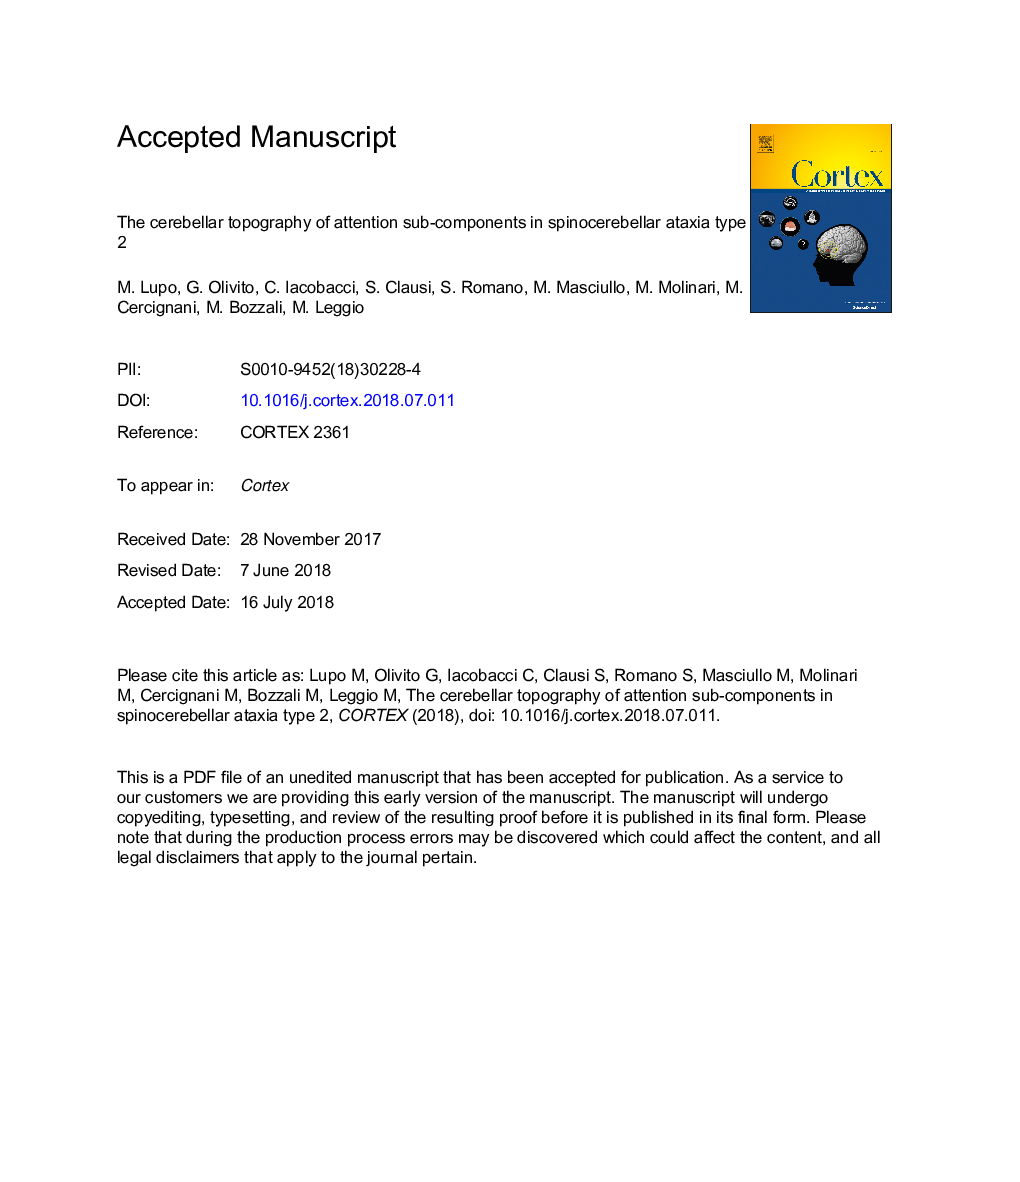 توپوگرافی مخچه از زیرمجموعه های توجه در نوع 2 آتاکسی اسپینوسئر سلولی است 